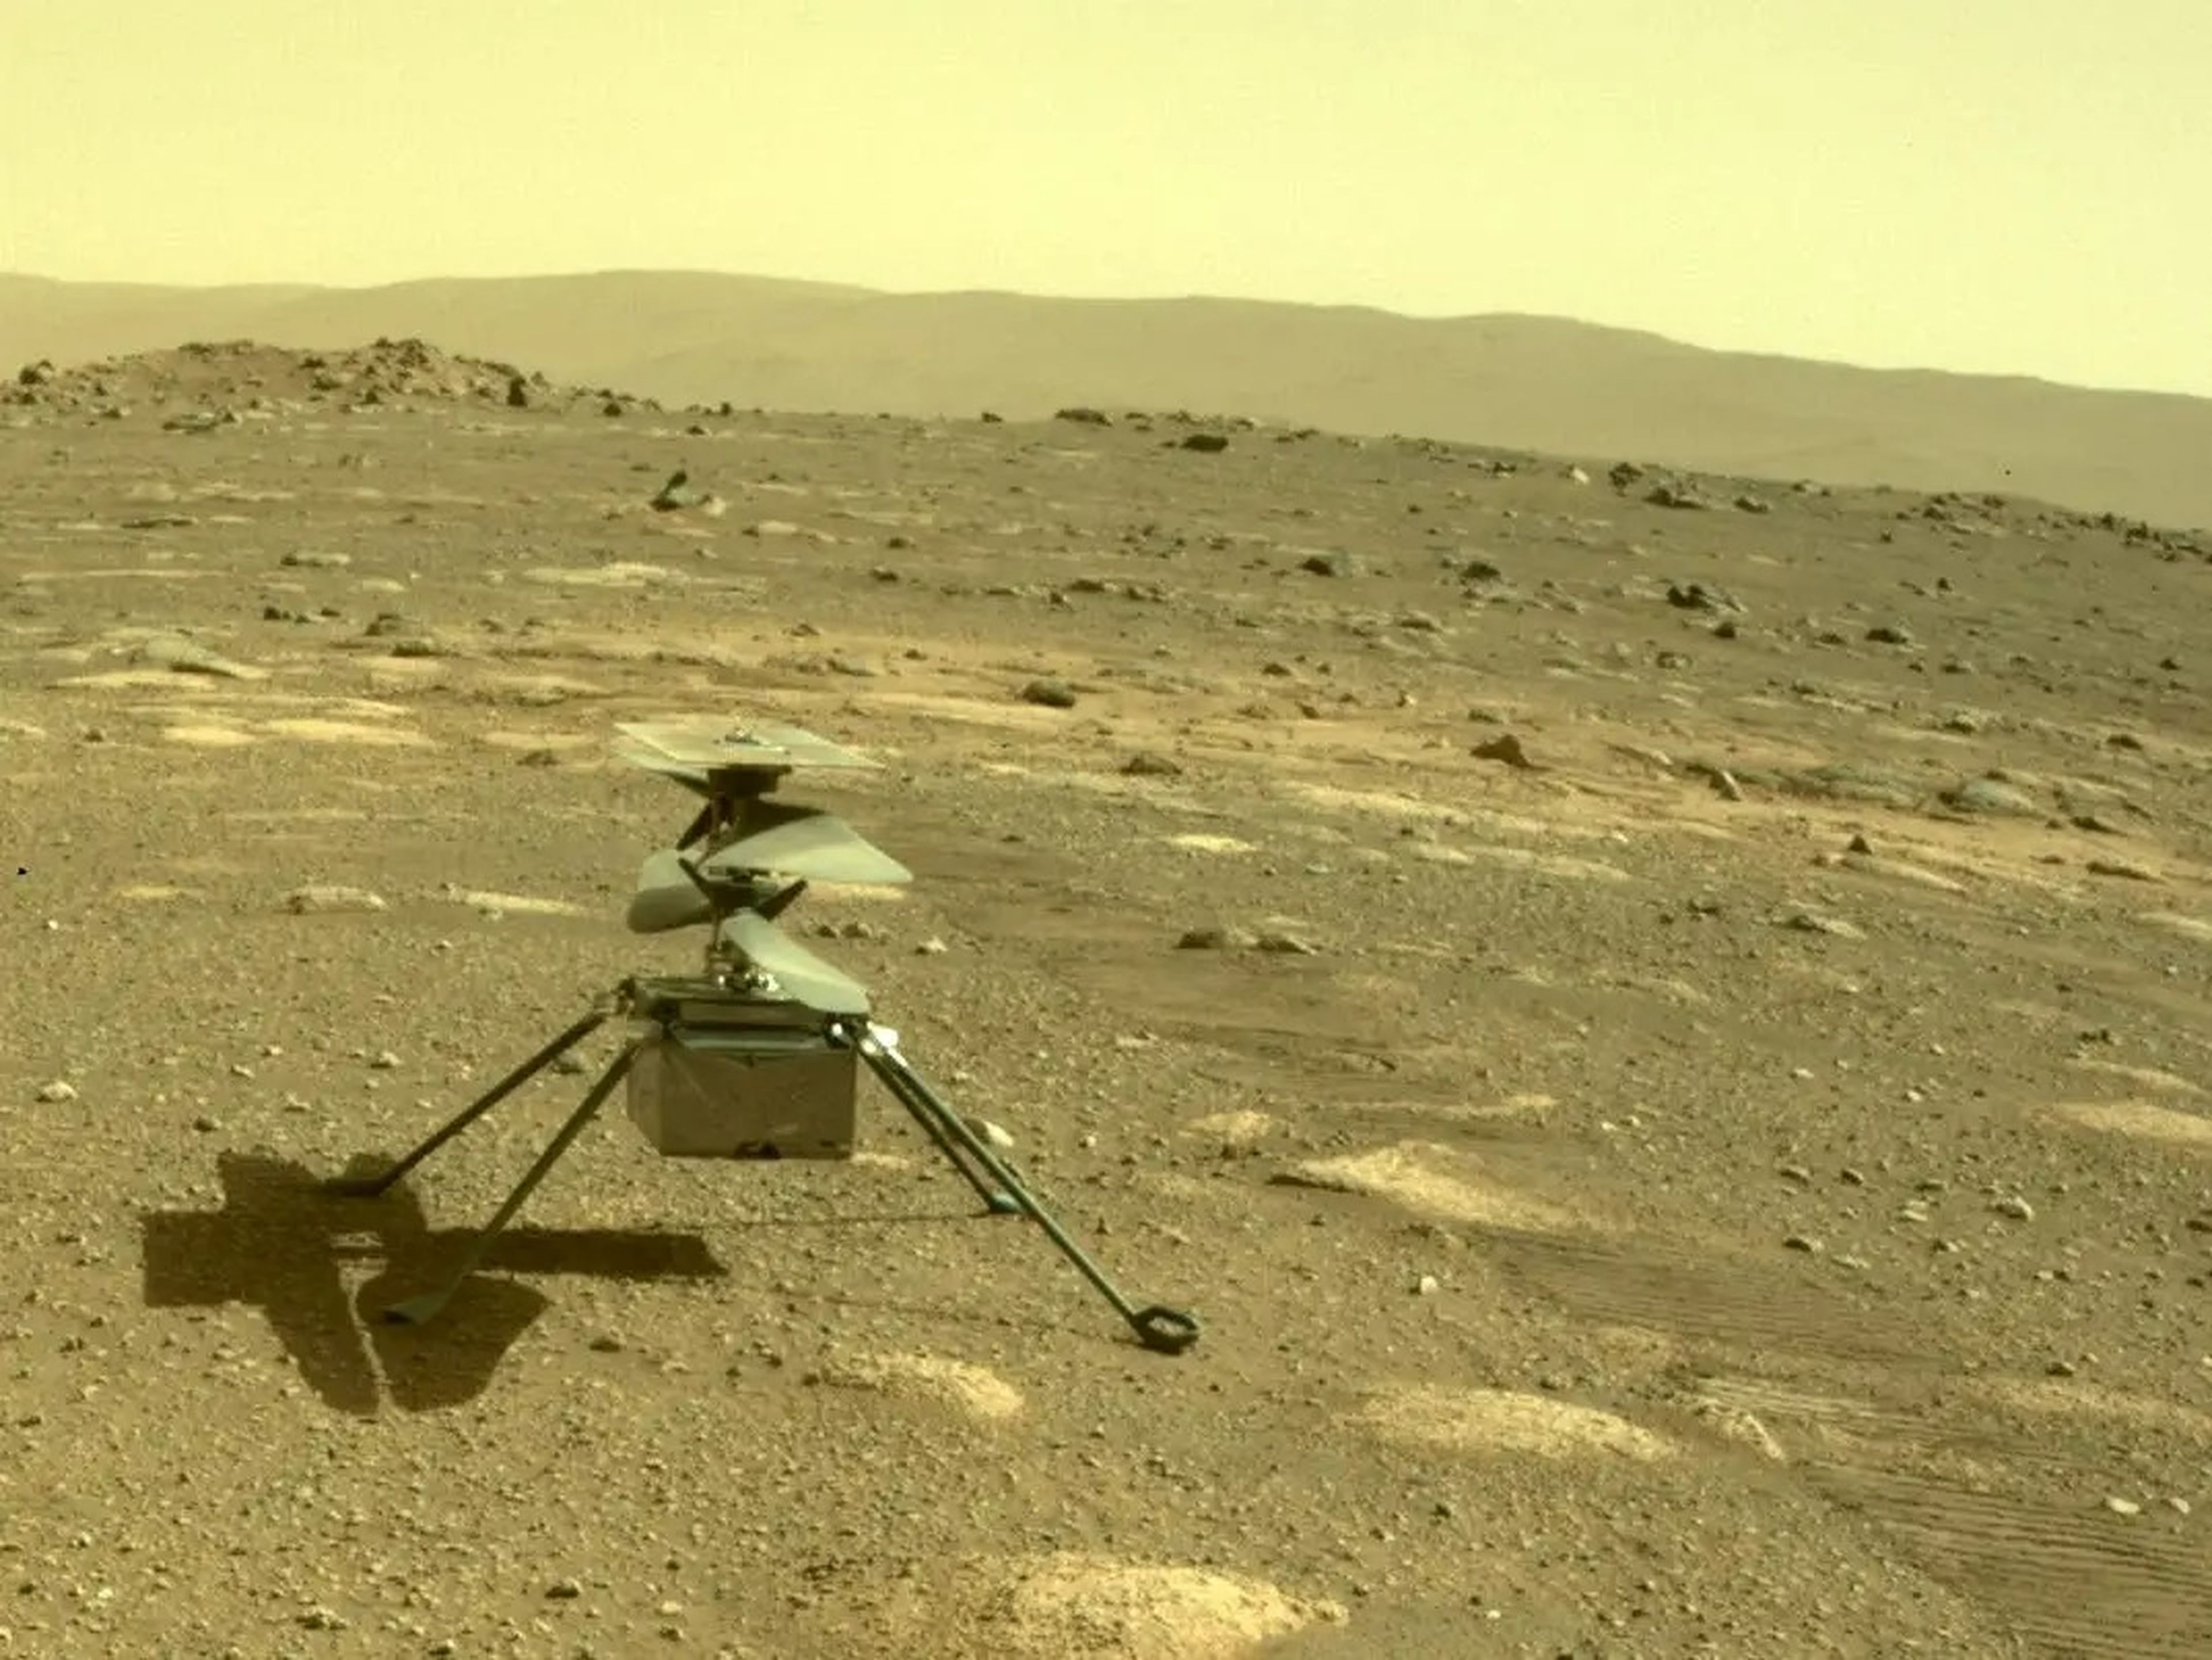 Helicóptero Ingenuity de la NASA, fotografiado en Marte por el rover Perseverance, el 4 de abril de 2021.